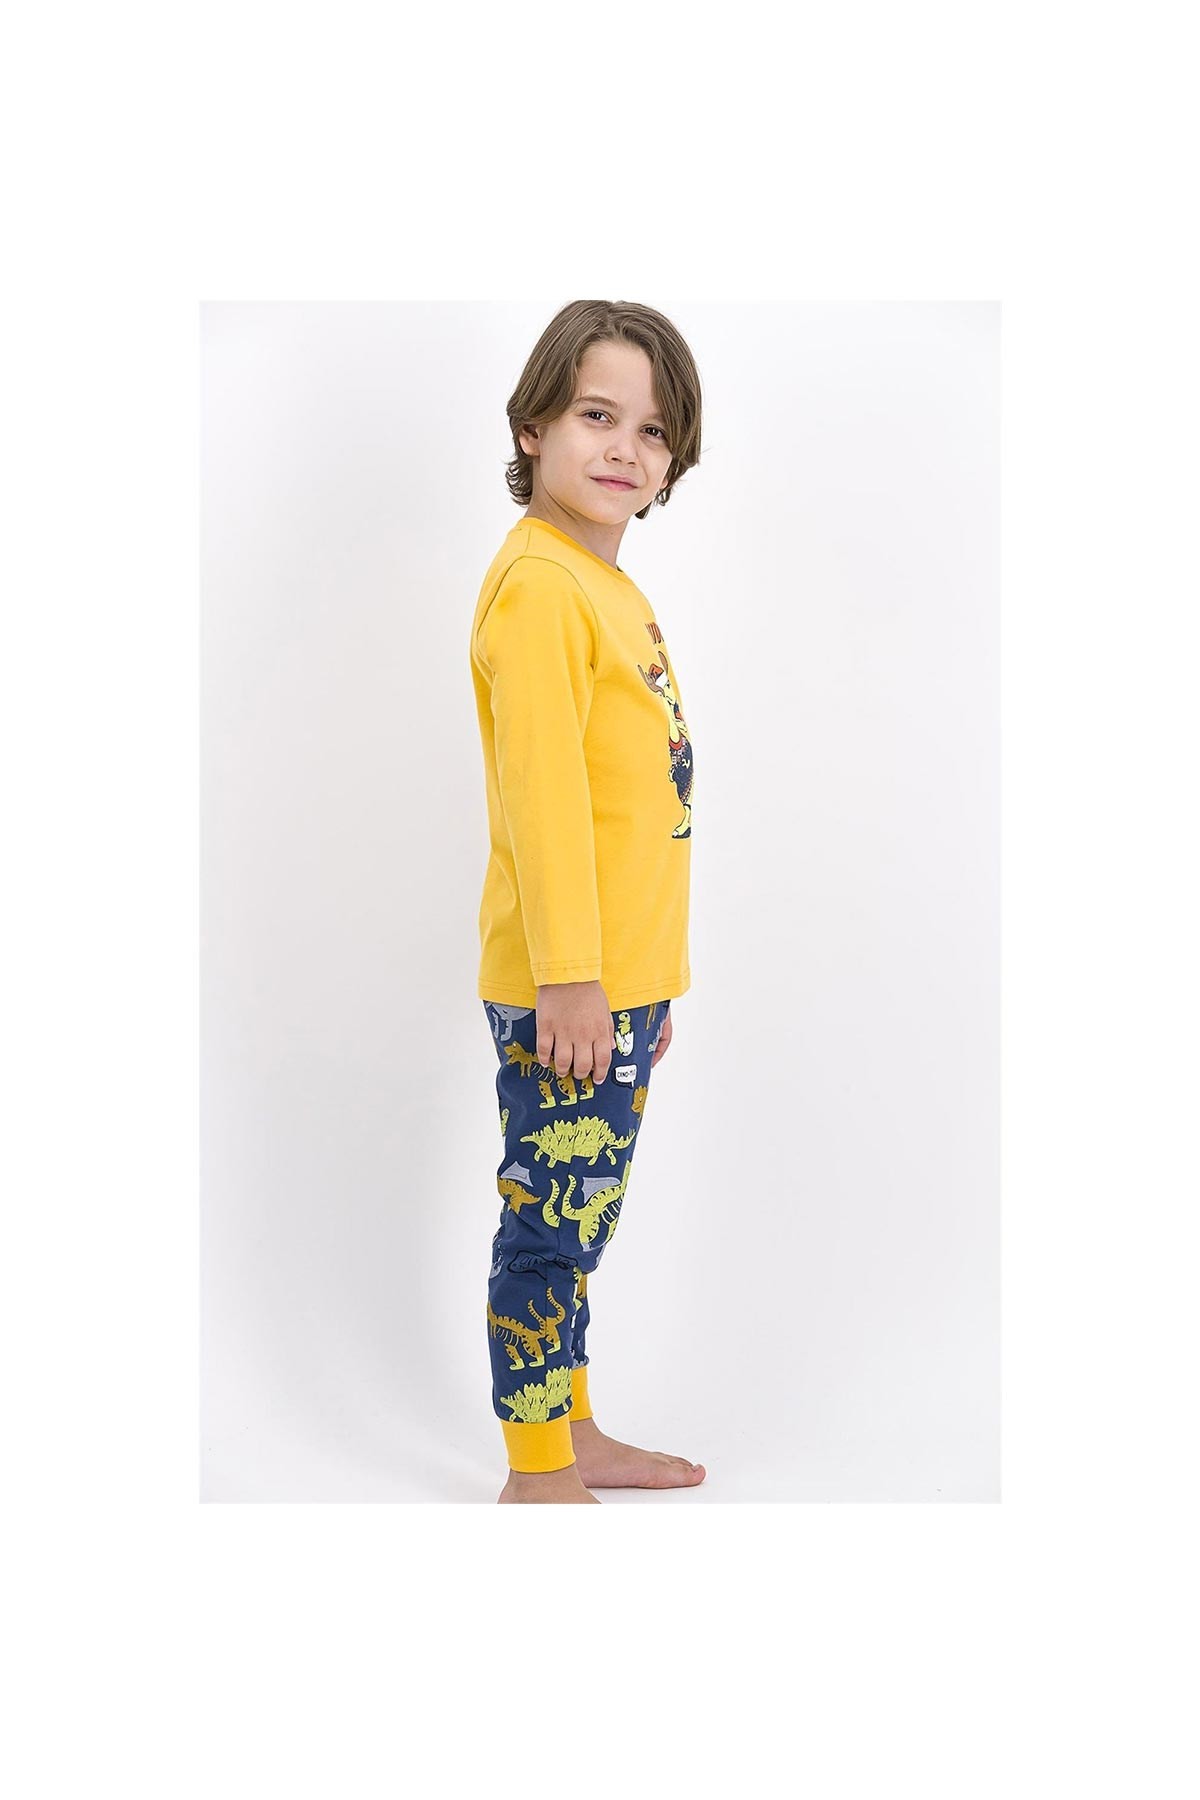 Roly Poly Erkek Çocuk Pijama Takımı Sarı